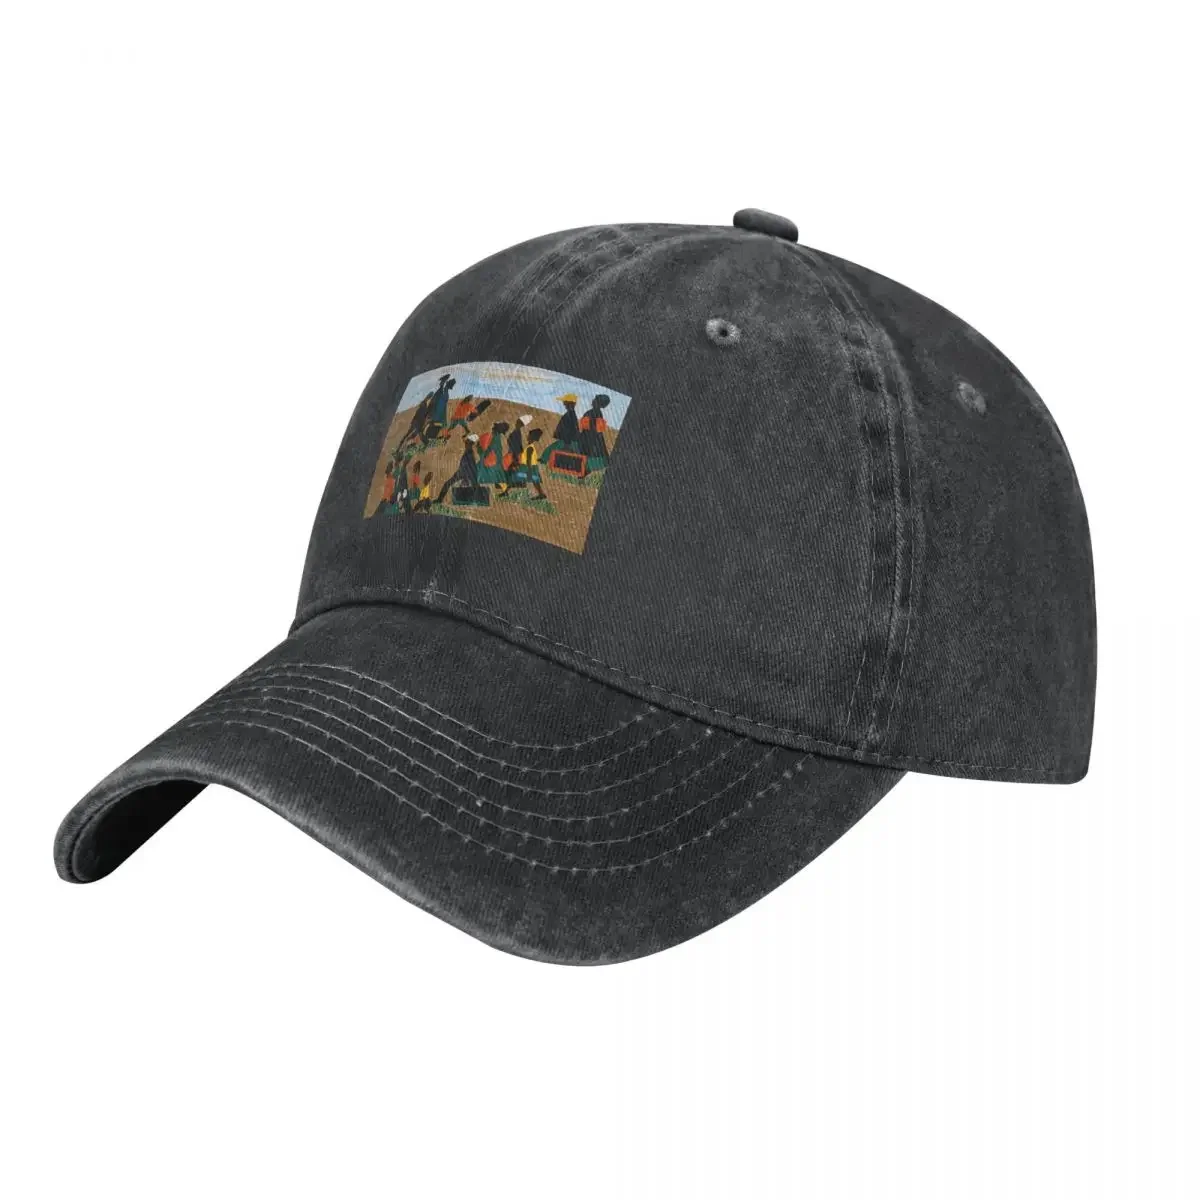 

Jacob Лоуренс арт ковбойская шляпа Солнцезащитная шляпа регби дизайнерская шляпа Спортивная Кепка для мужчин и женщин